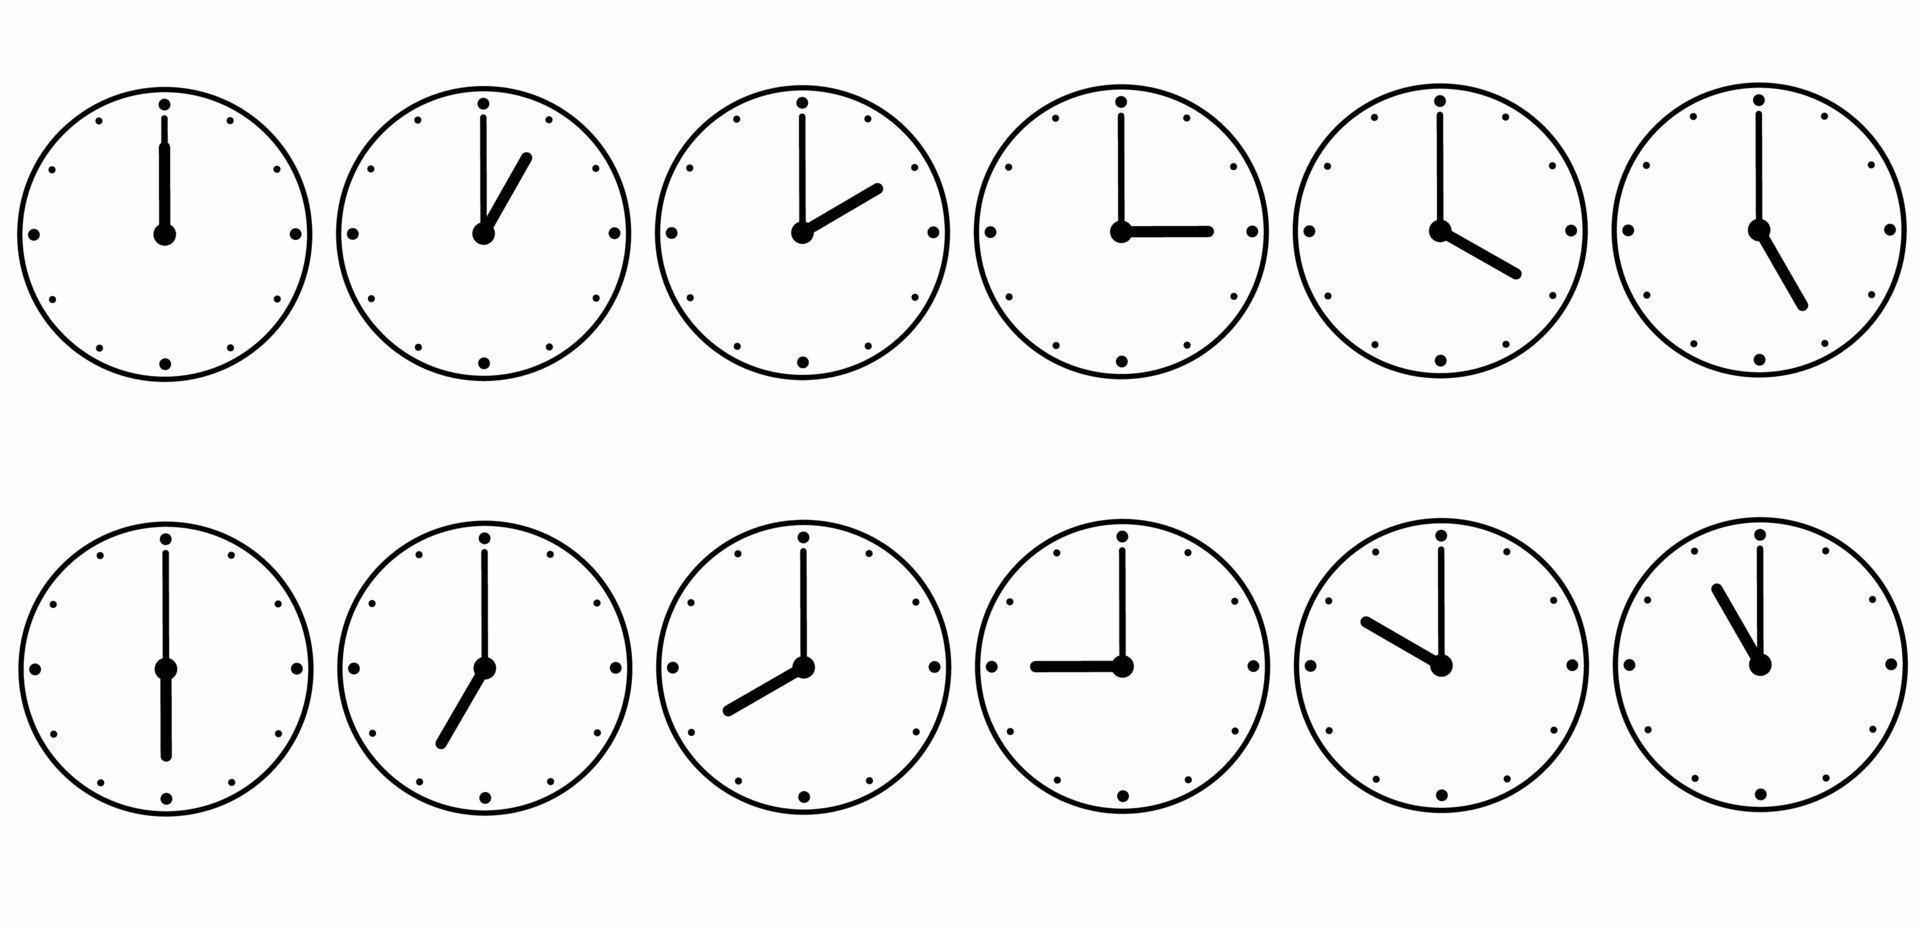 klokken icon set voor elk uur geïsoleerd op een witte achtergrond vector